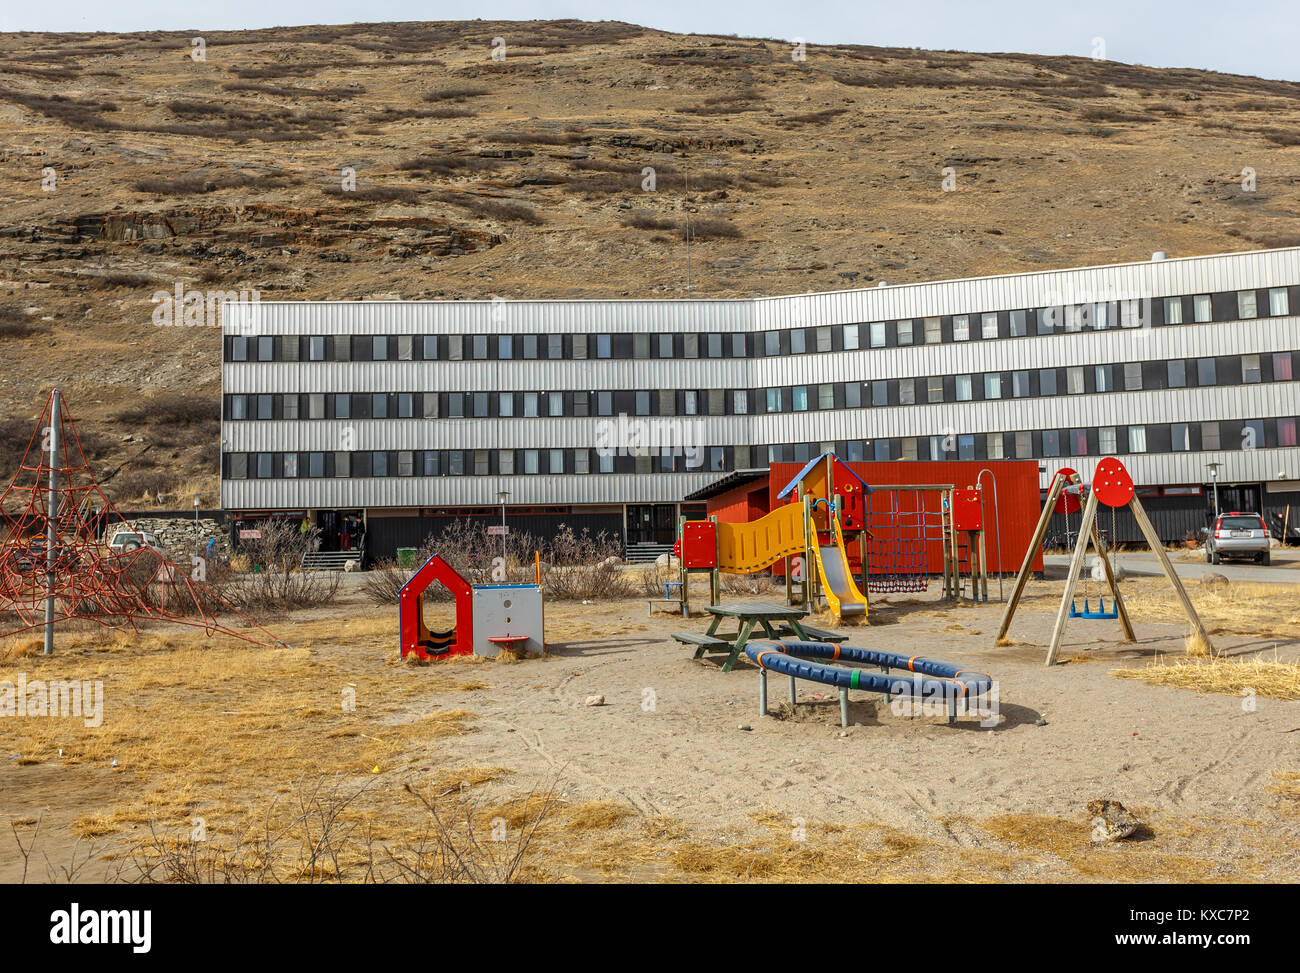 La vita moderna casa con parco giochi per bambini nella tundra, Kangerlussuaq in Groenlandia Foto Stock